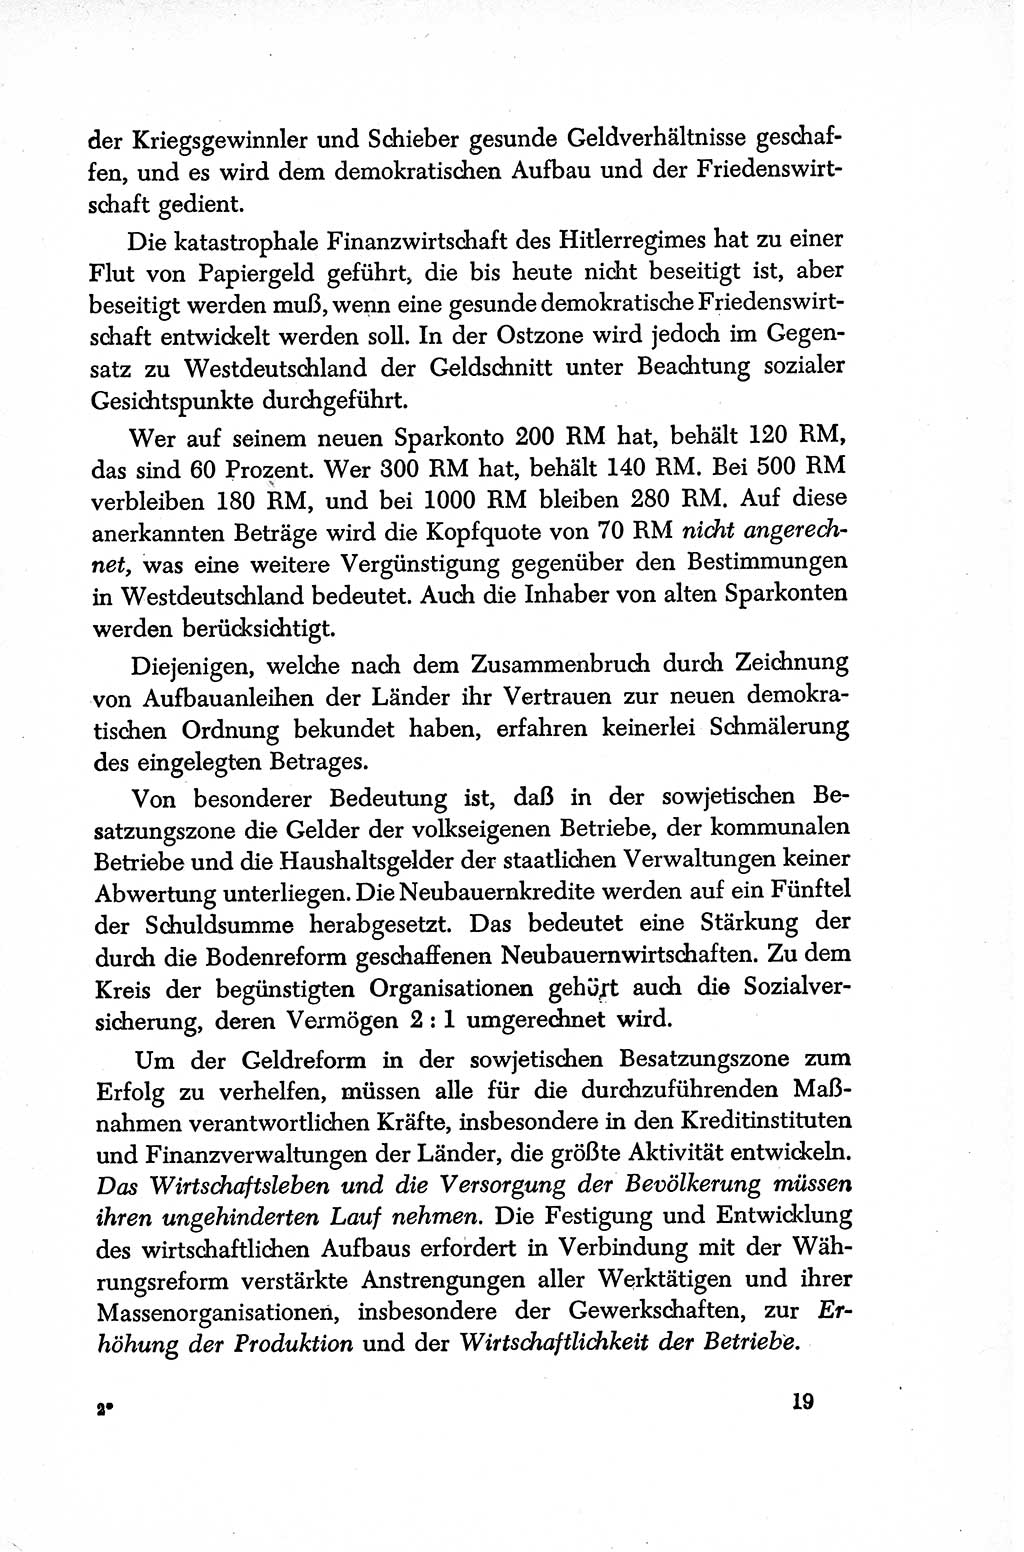 Dokumente der Sozialistischen Einheitspartei Deutschlands (SED) [Sowjetische Besatzungszone (SBZ) Deutschlands/Deutsche Demokratische Republik (DDR)] 1948-1950, Seite 19 (Dok. SED SBZ Dtl. DDR 1948-1950, S. 19)